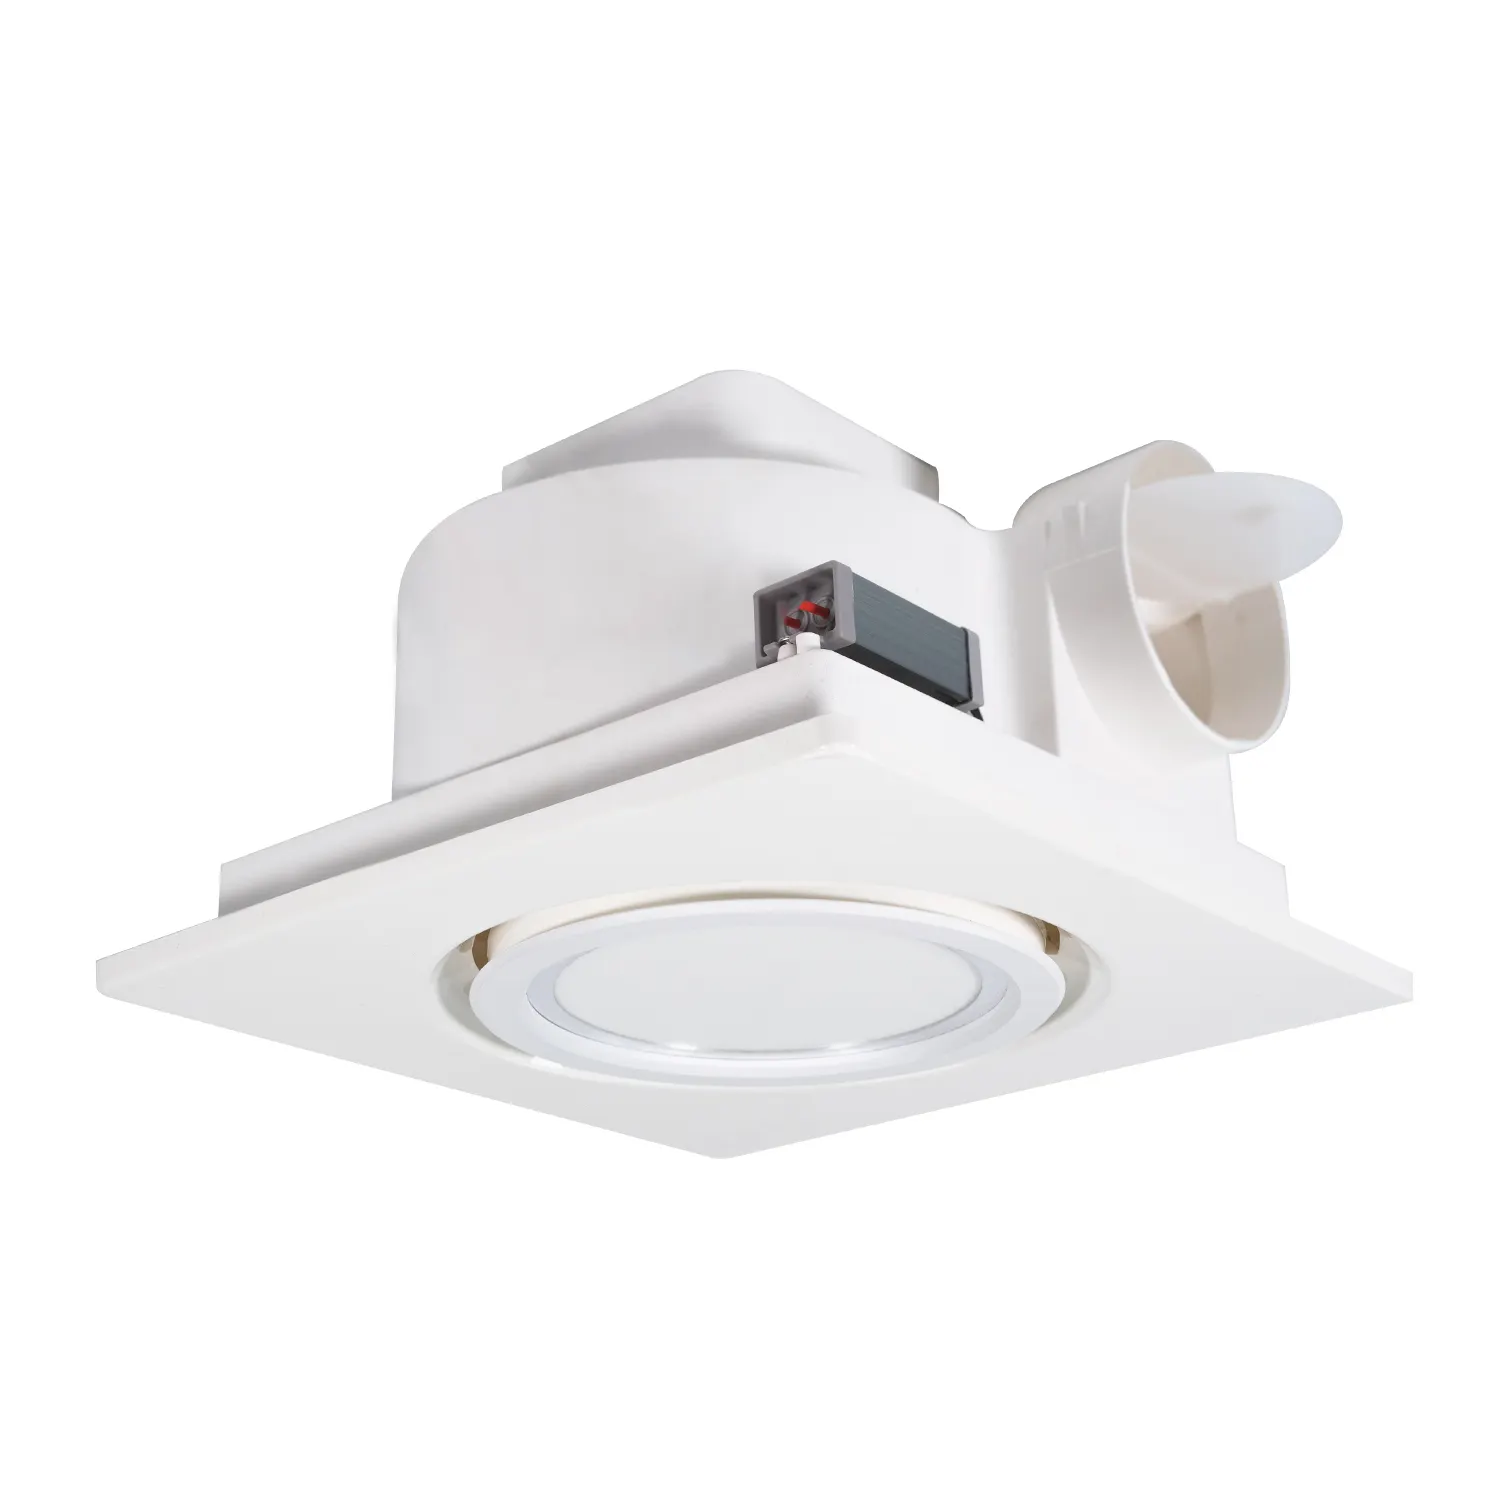 OEM/ODM fabrikgefertigtes Design Eigenmarke Deckenmassenauspuffventilator Installation Auspuff Küchenbelüfter mit LED-Licht